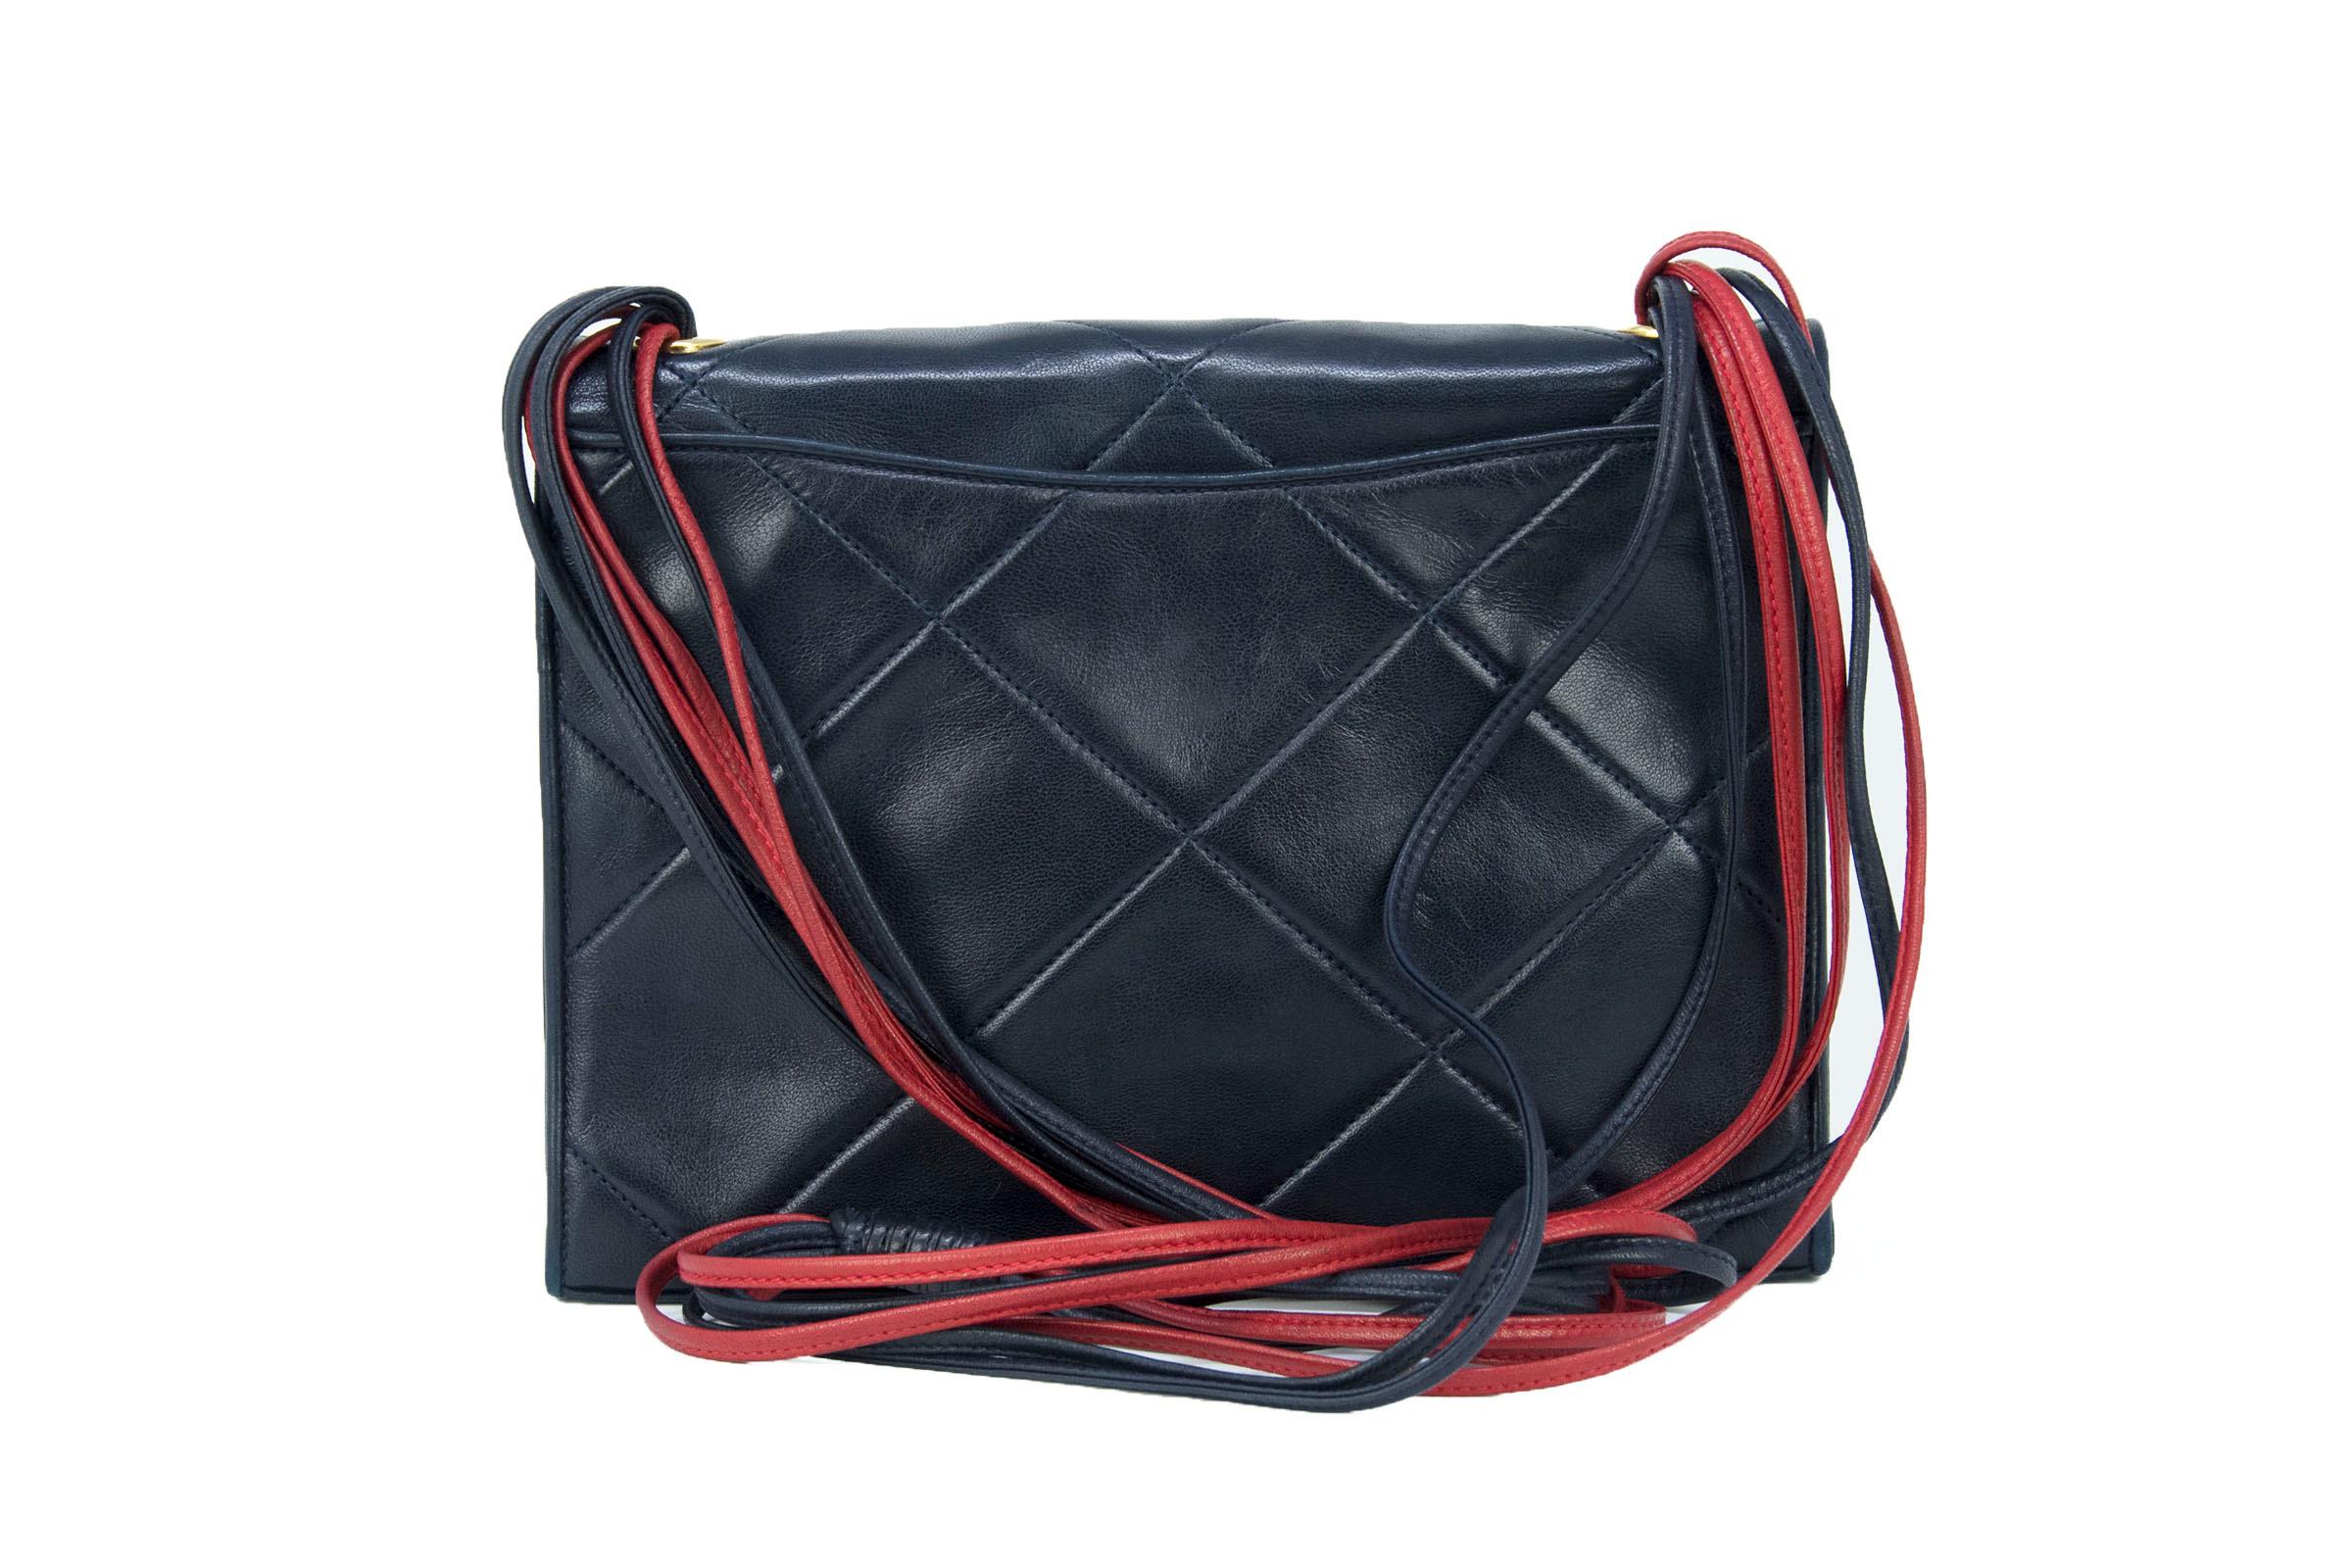 Vintage Chanel Red & Black Quilted Leather Handbag For Sale 1